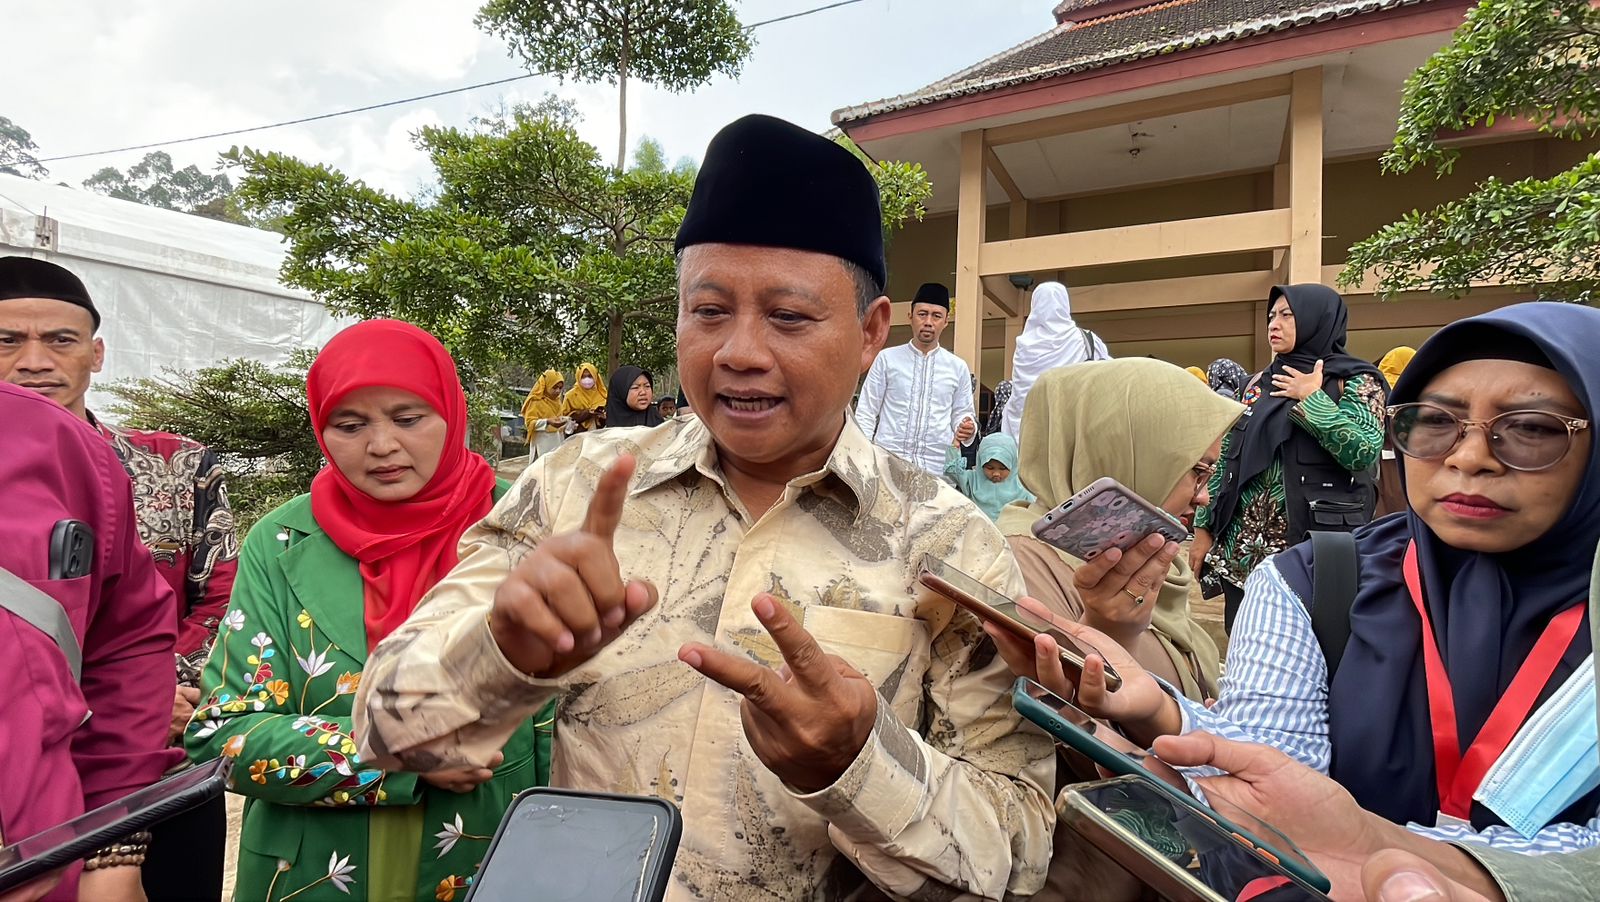 Wakil Gubernur Jawa Barat Uu Ruzhanul Ulum saat menghadiri Kompetisi Bisnis Digital Santripreaneur di Ponpes Persis 259 Firdaus, Kamis (16/3/2023). (Agni Ilman Darmawan/ Jabarekspres.com)